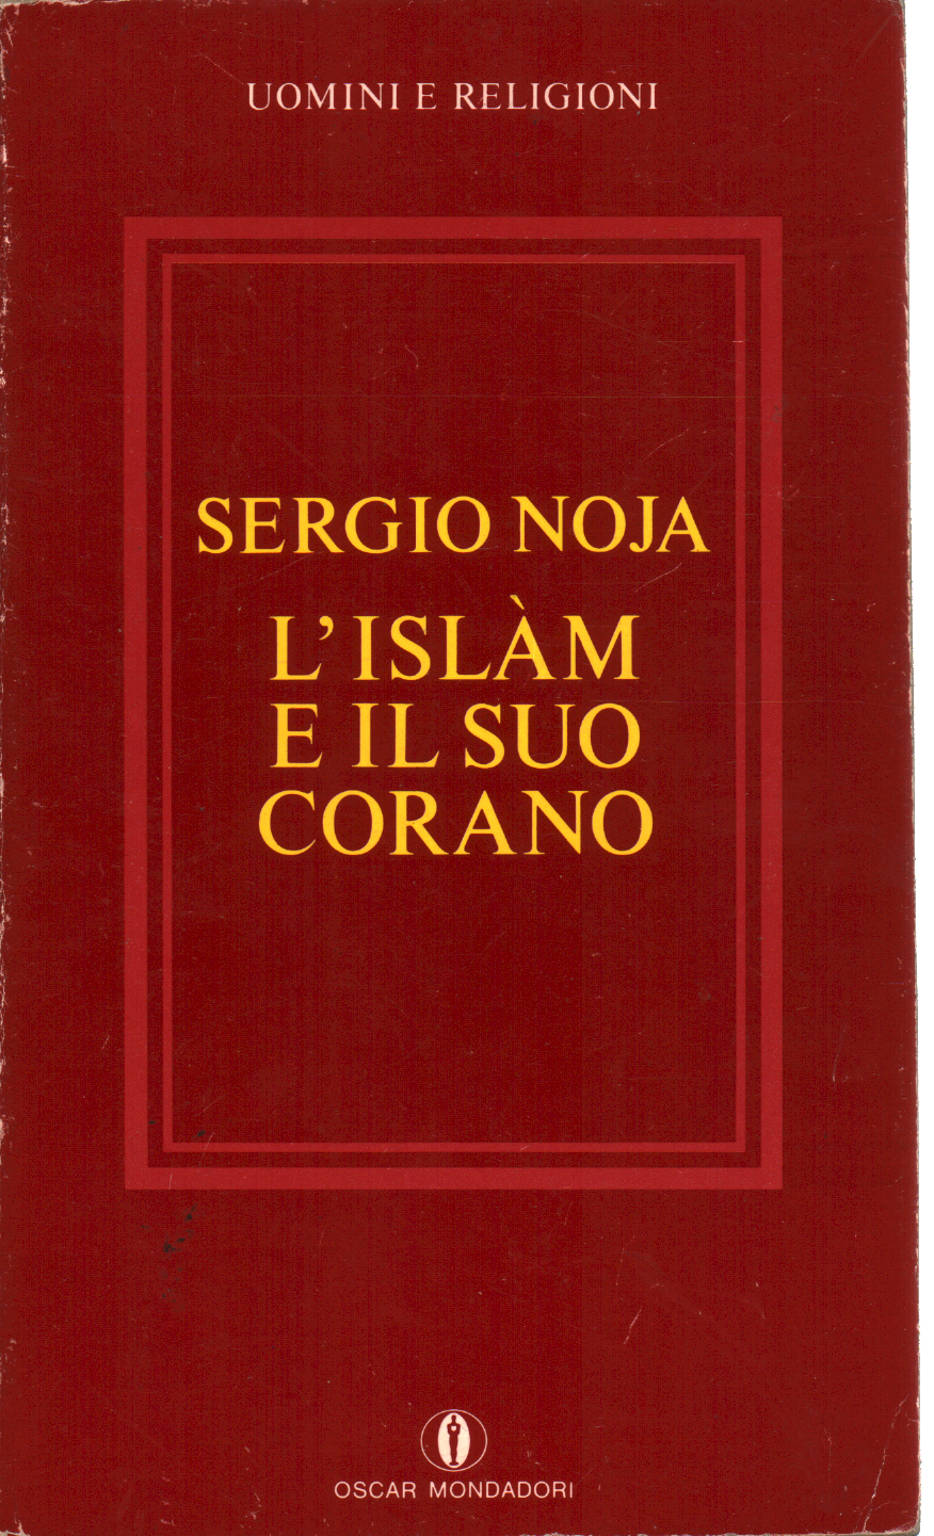 El Islám y el Corán, Sergio Noja